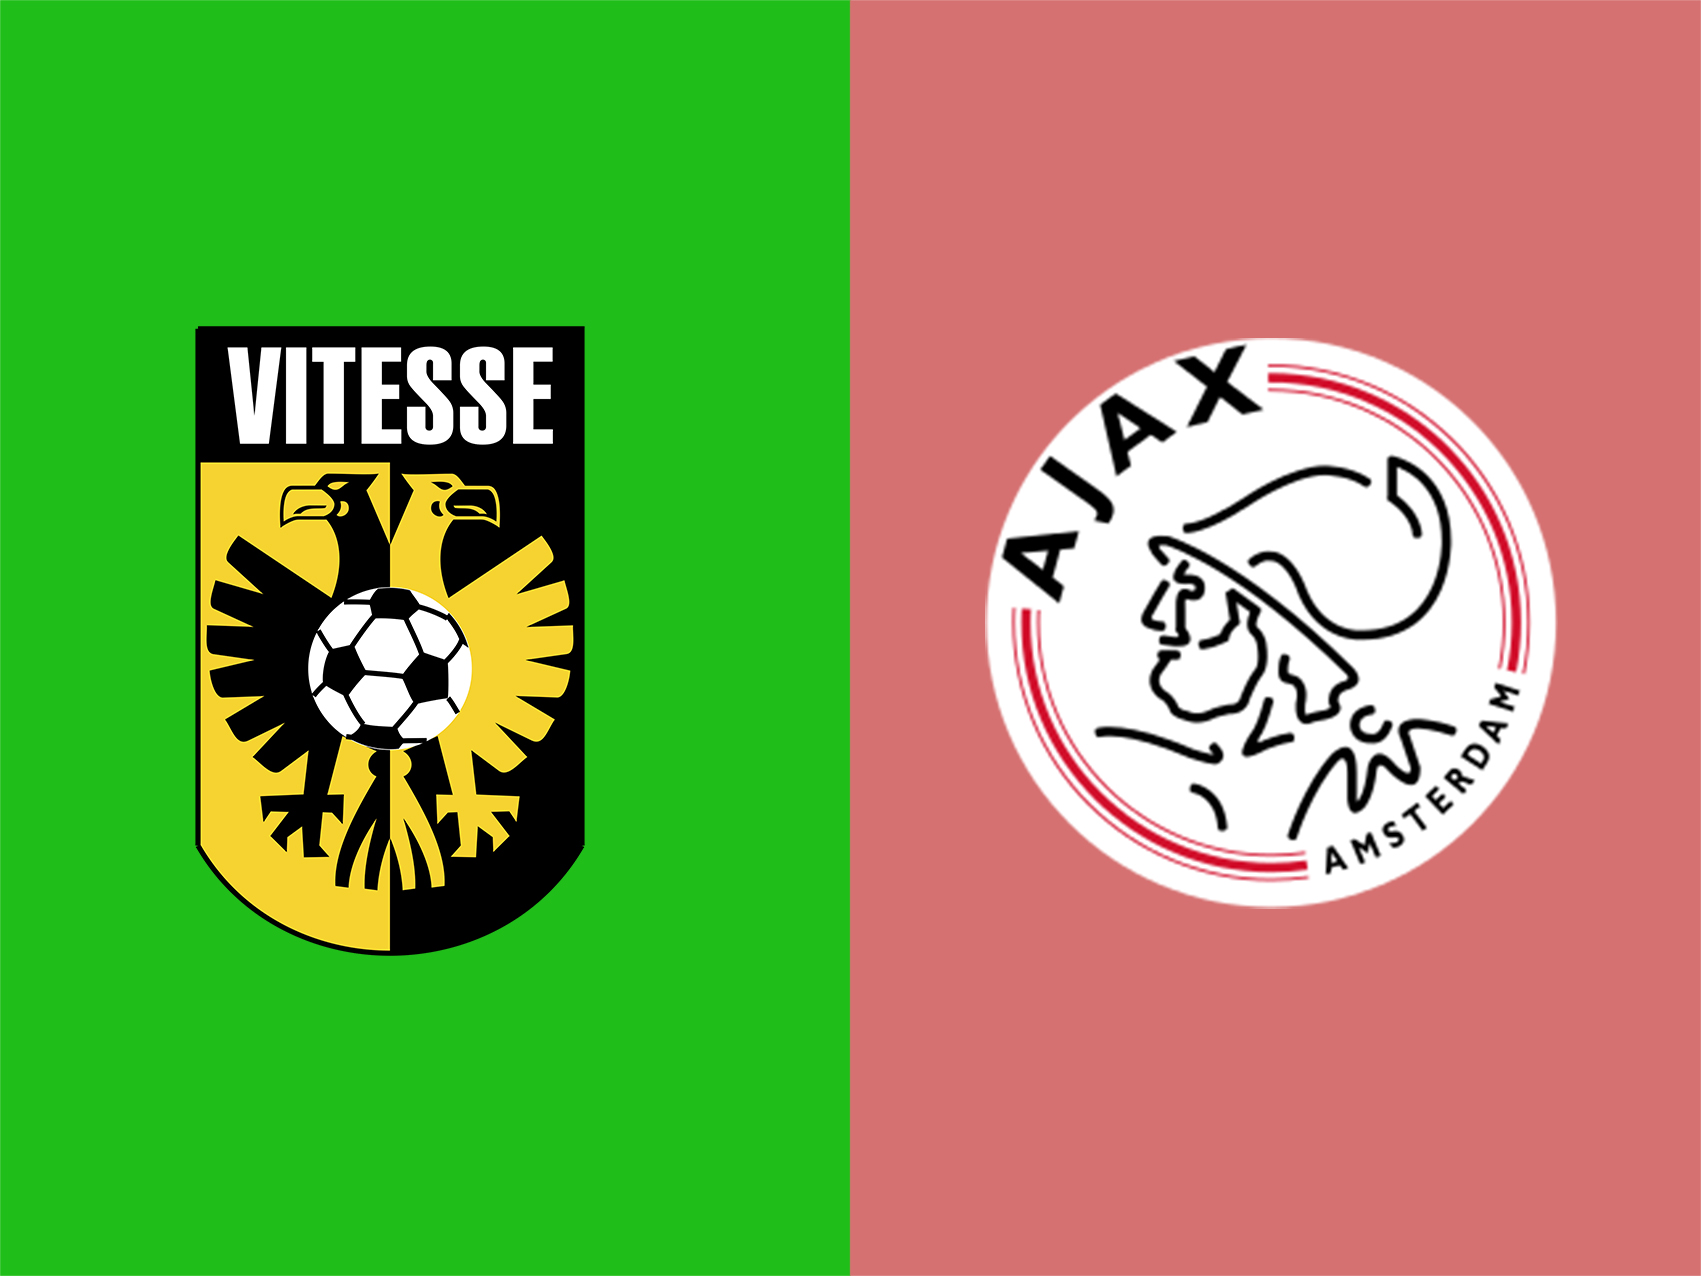 soi-keo-ca-cuoc-bong-da-ngay-2-8-Vitesse-vs-Ajax-tim-kiem-chien-thang-b9 1